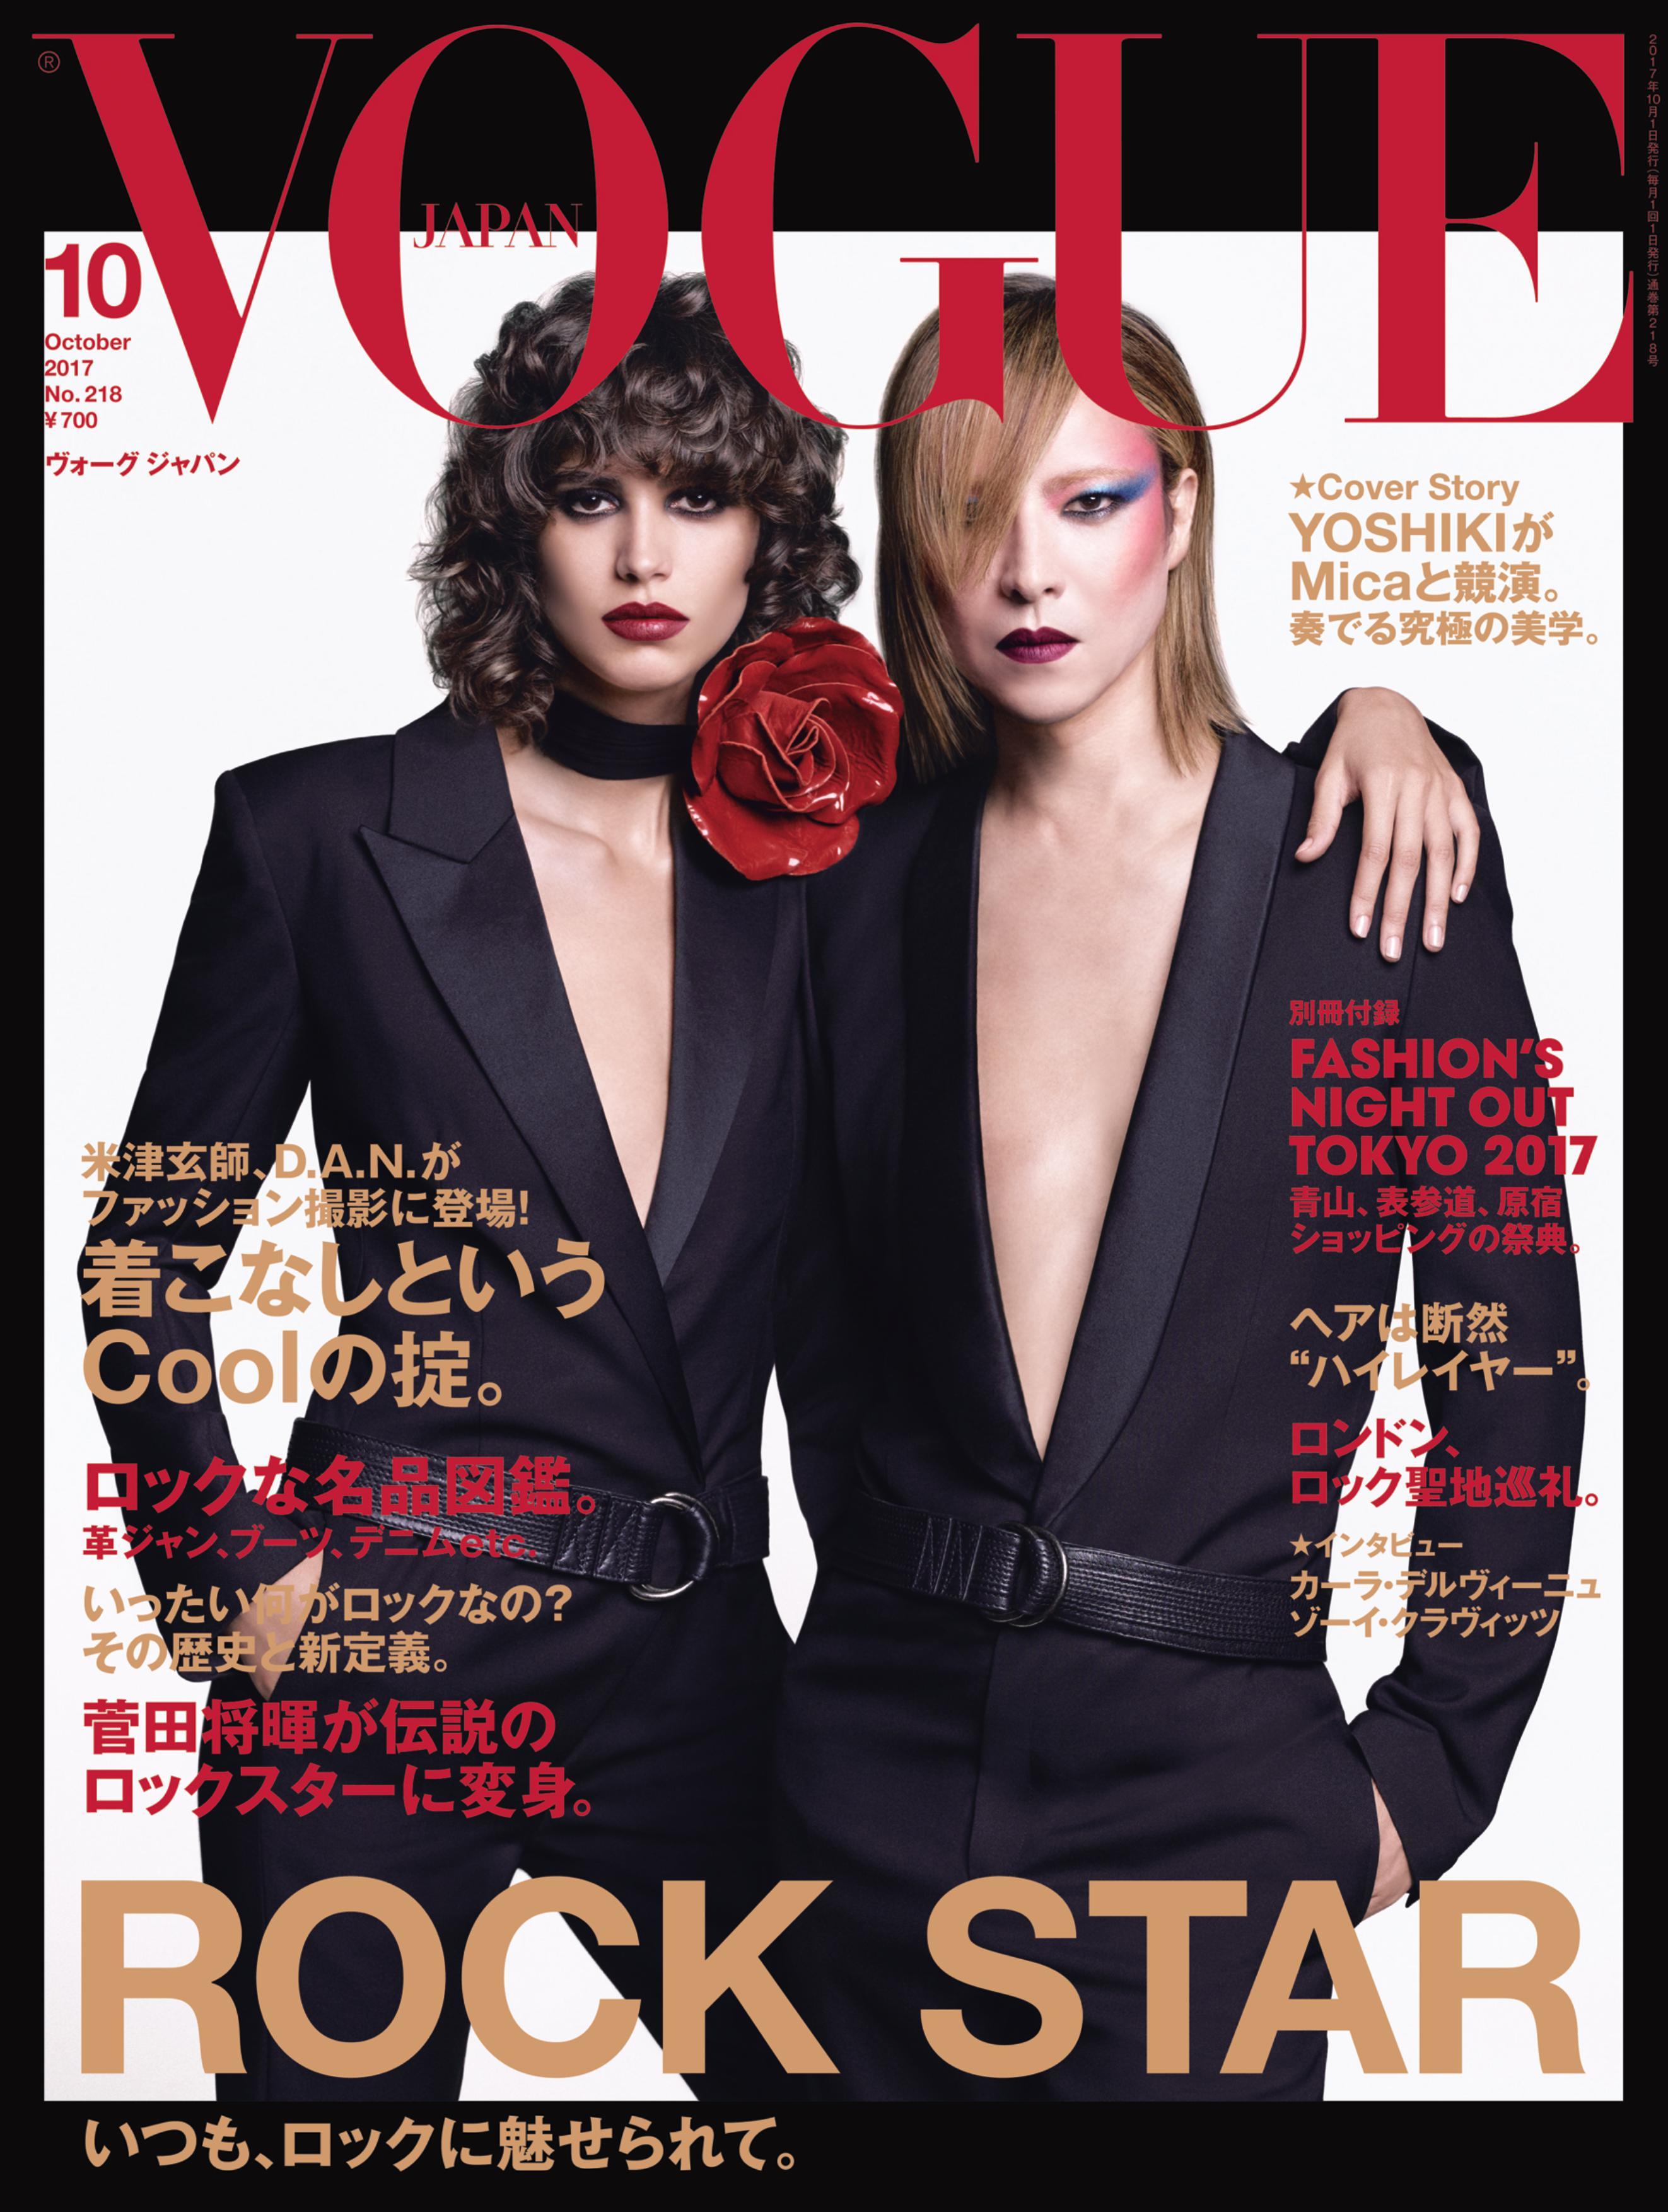 Yoshiki 日本人男性初の快挙 メインテーマが Rock Star の雑誌 Vogue Japan 10月号の表紙を飾る Spice エンタメ特化型情報メディア スパイス